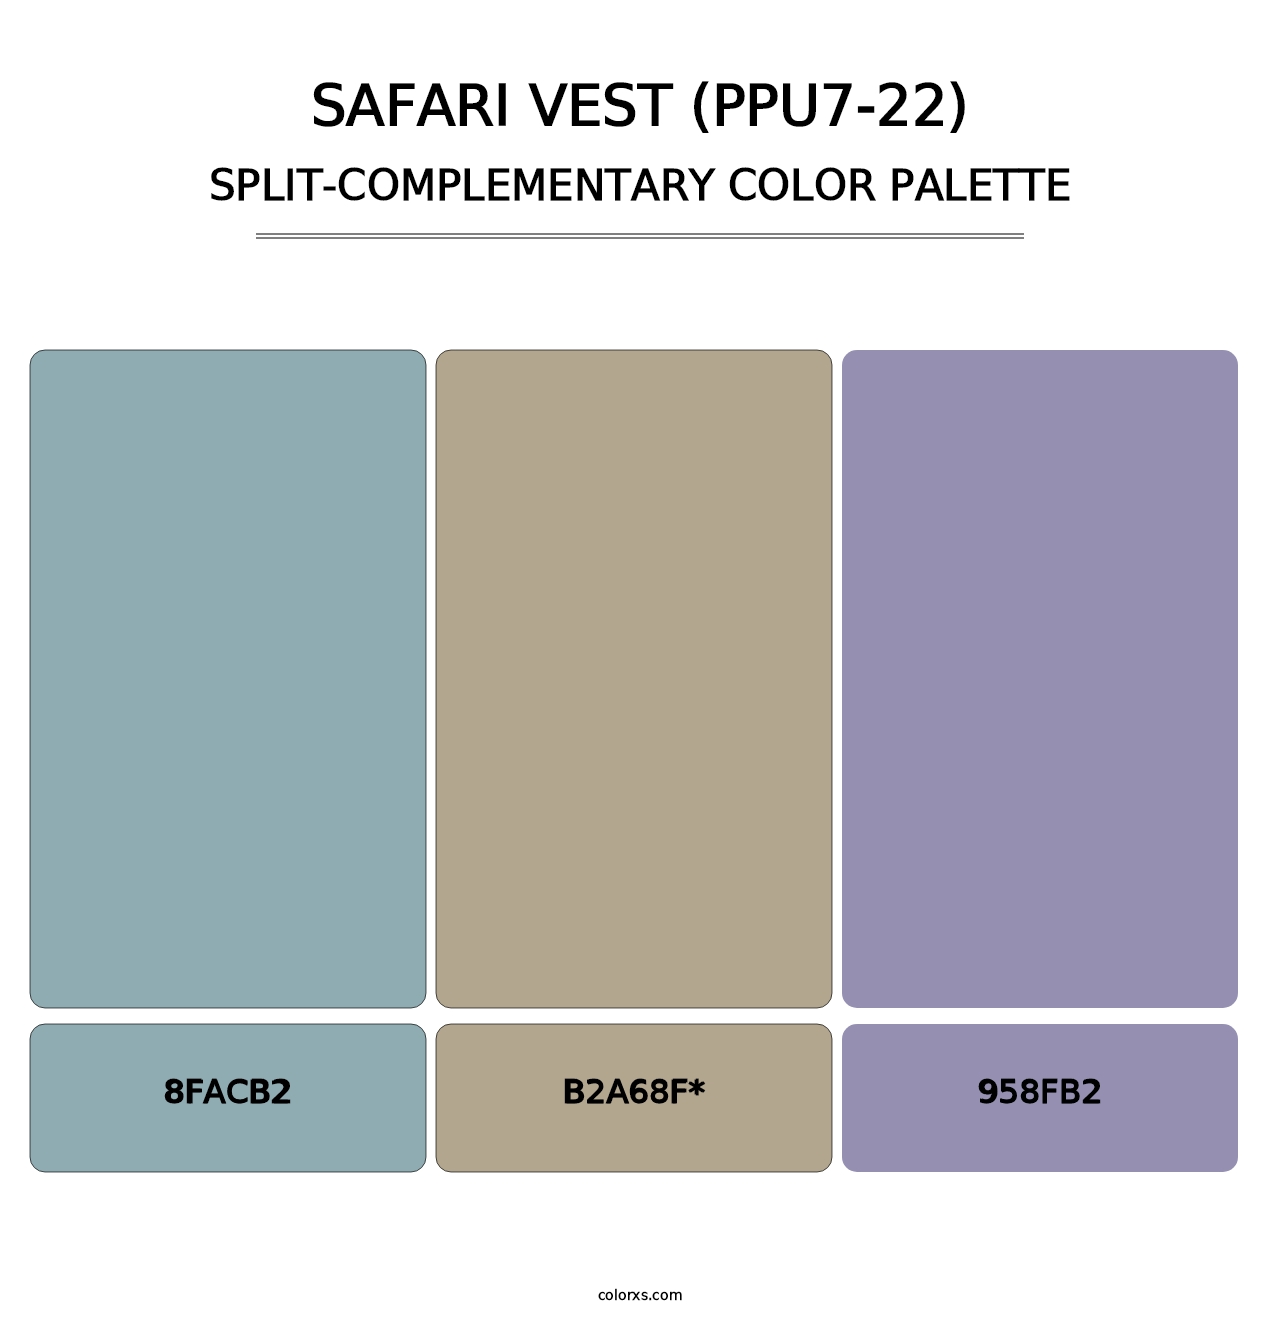 Safari Vest (PPU7-22) - Split-Complementary Color Palette